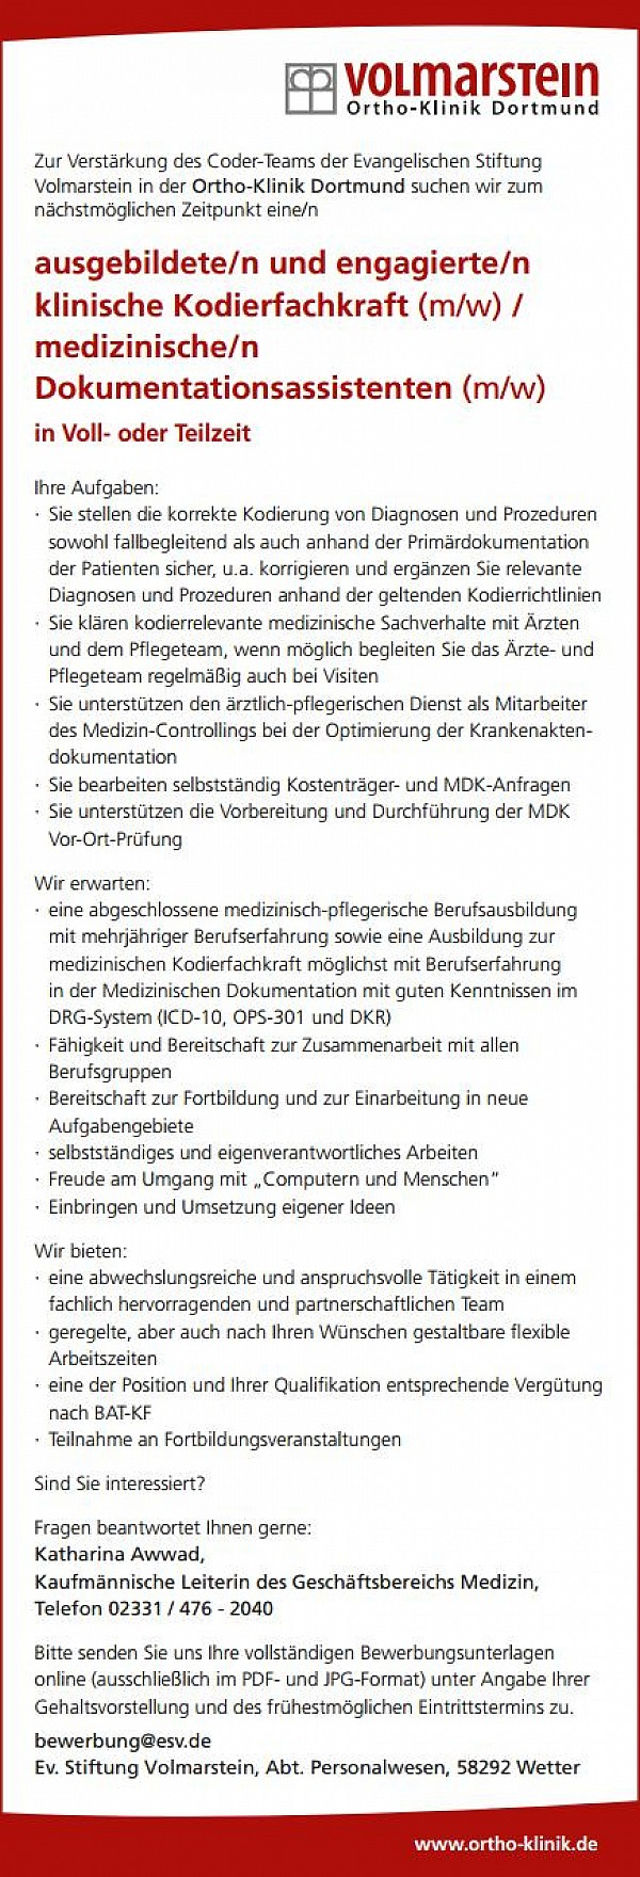 Ortho-Klinik Dortmund: Klinische Kodierfachkraft / medizinischer Dokumentationsassistent (m/w)